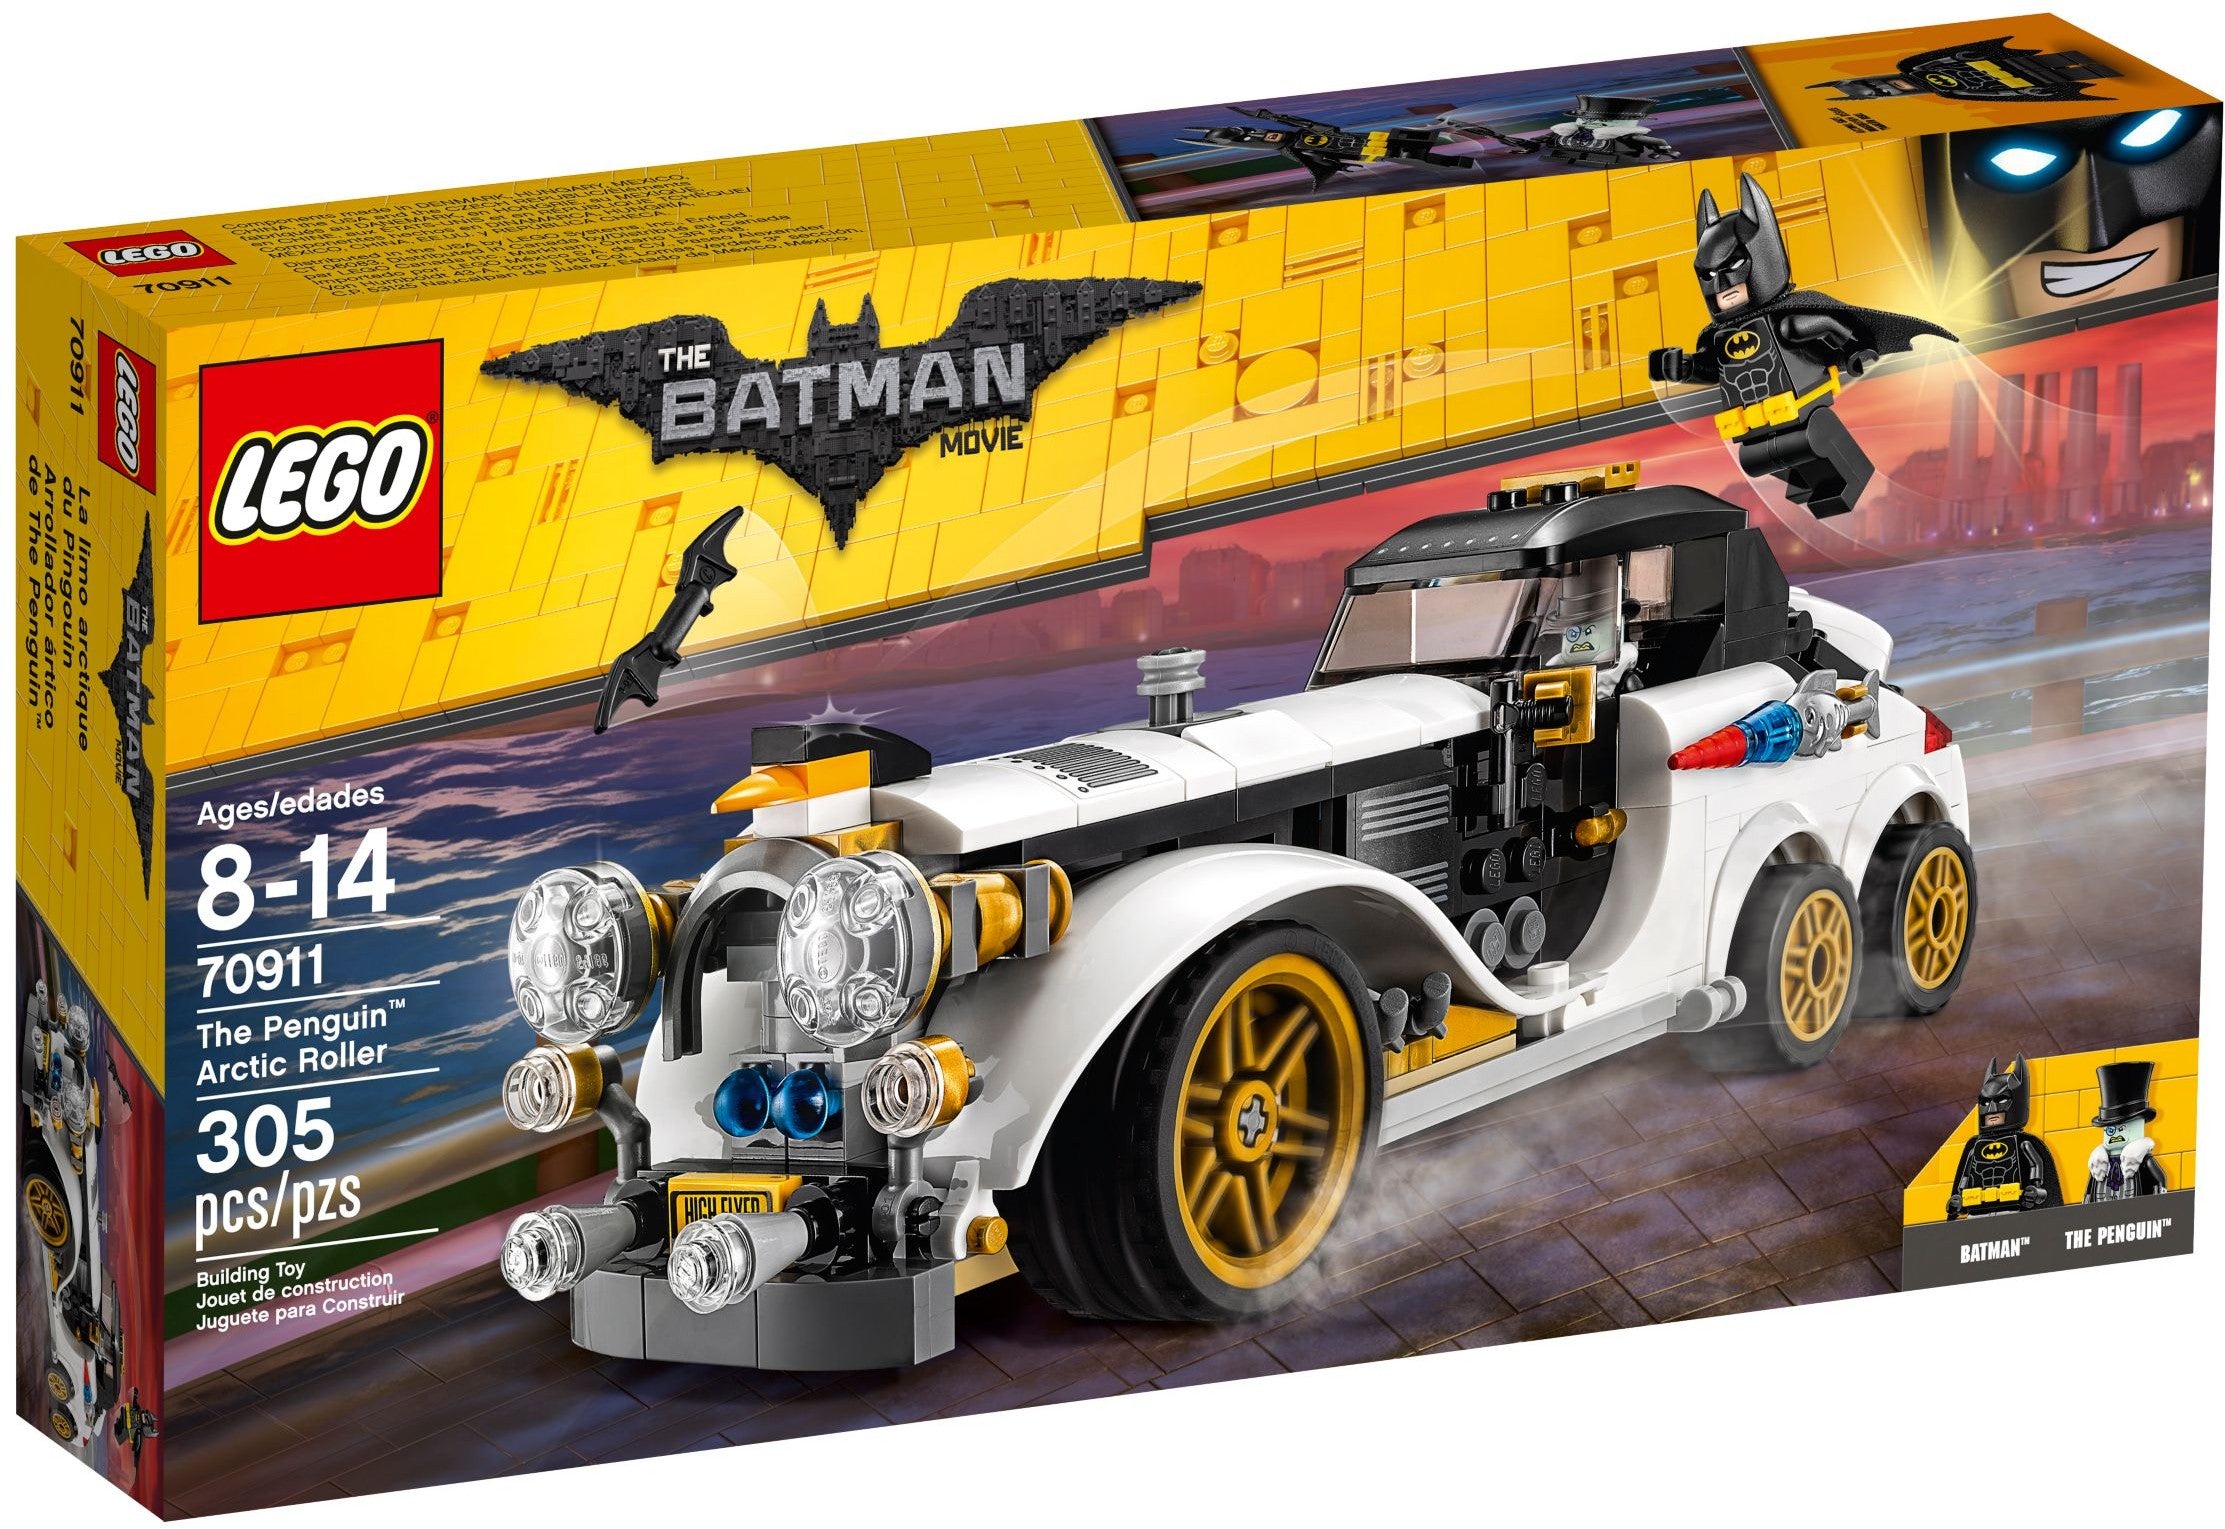 indad dobbelt Knogle LEGO® Batman™ 70911 The Penguin Arctic Roller (305 pieces) – AESOP'S FABLE